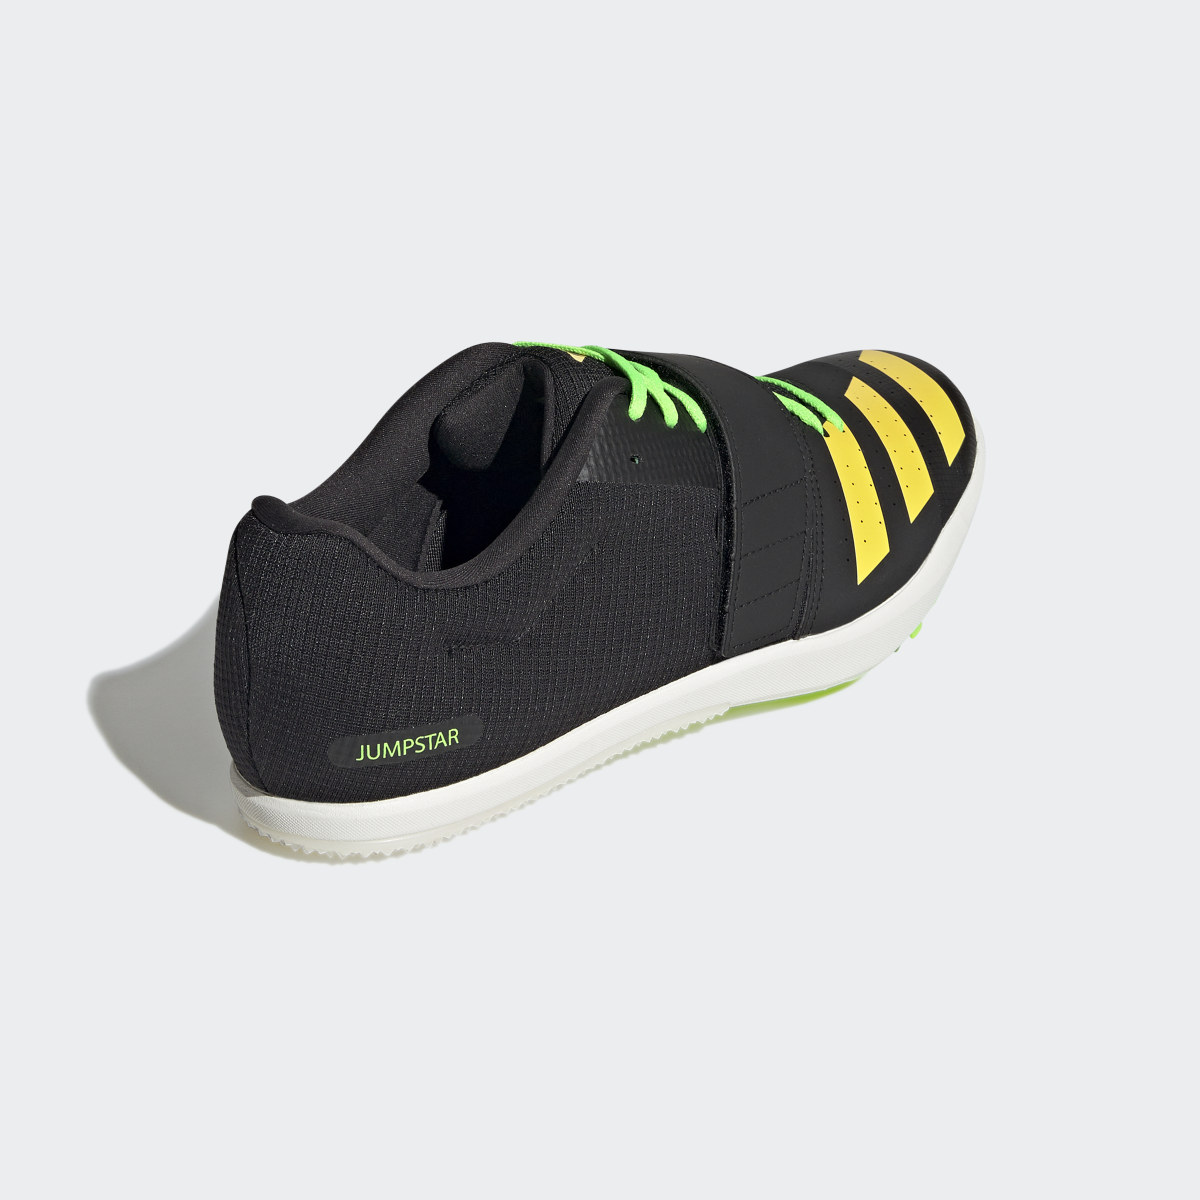 Adidas Jumpstar Shoes. 6